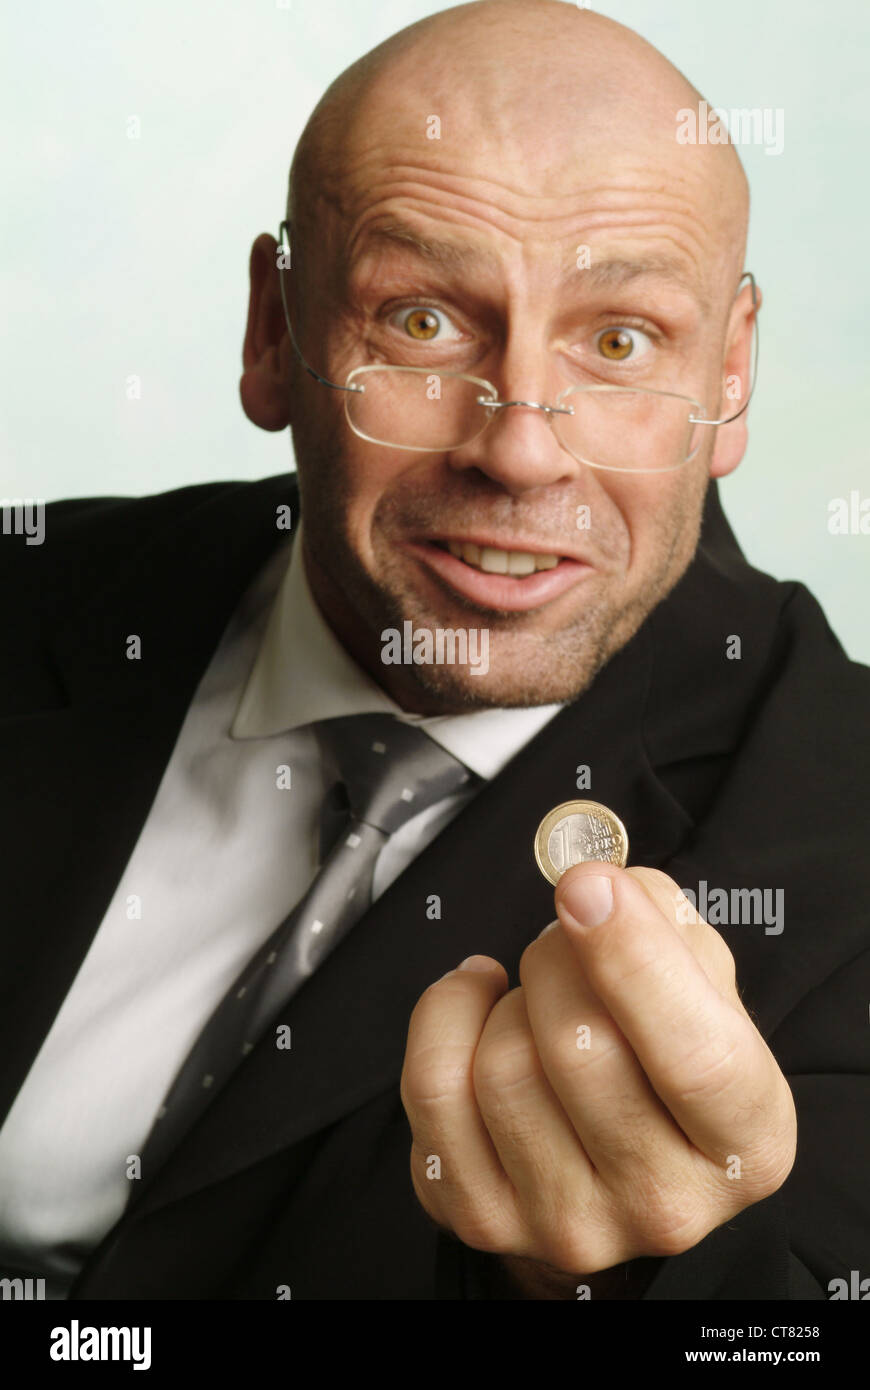 Hombre con 1 euro pedazo en la mano Foto de stock